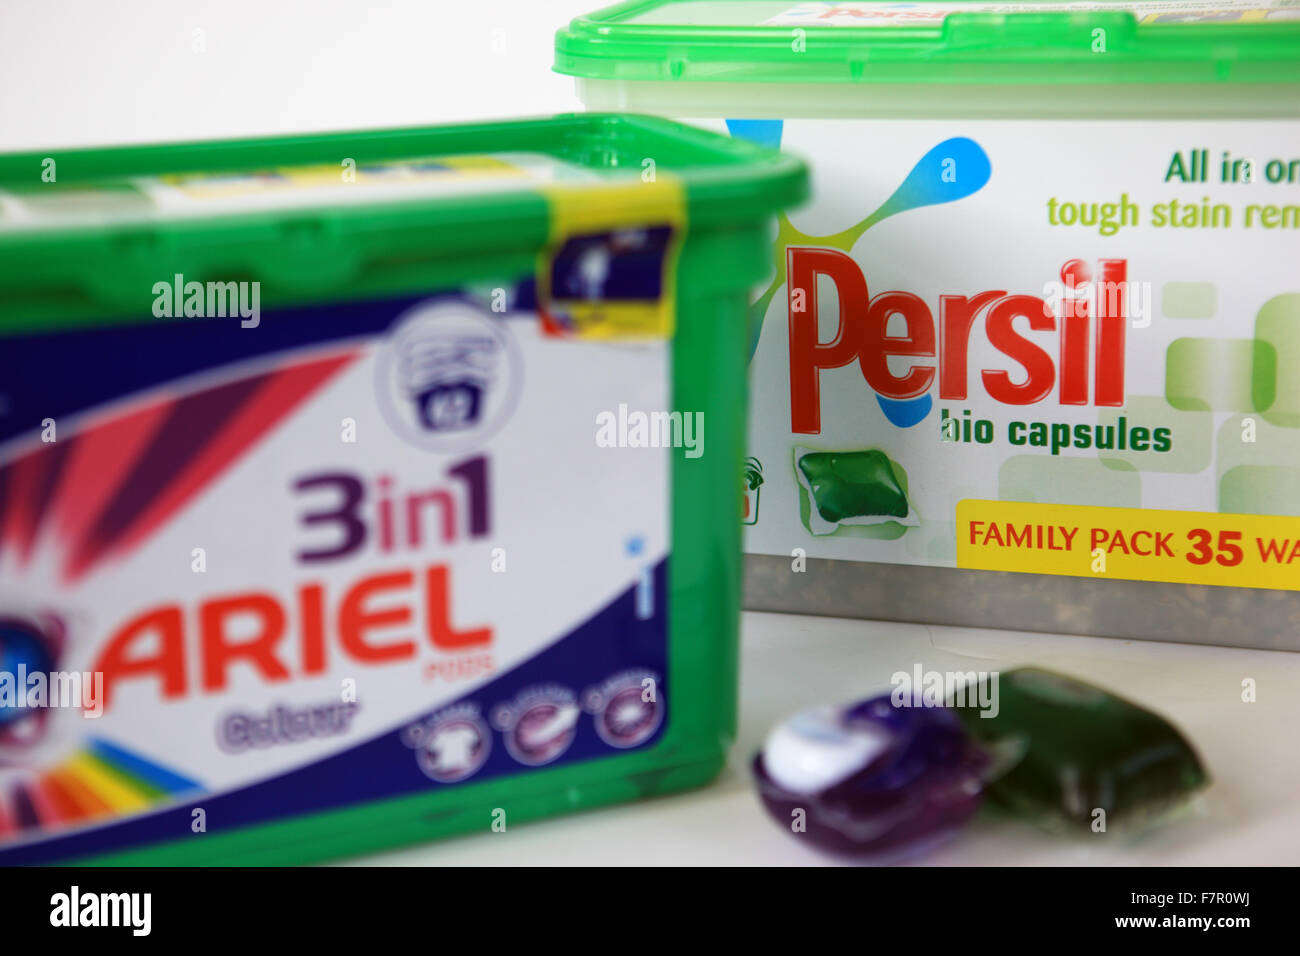 Comment utiliser les capsules pour se laver et lesquelles choisir: Tide,  Ariel, Persil ou autres